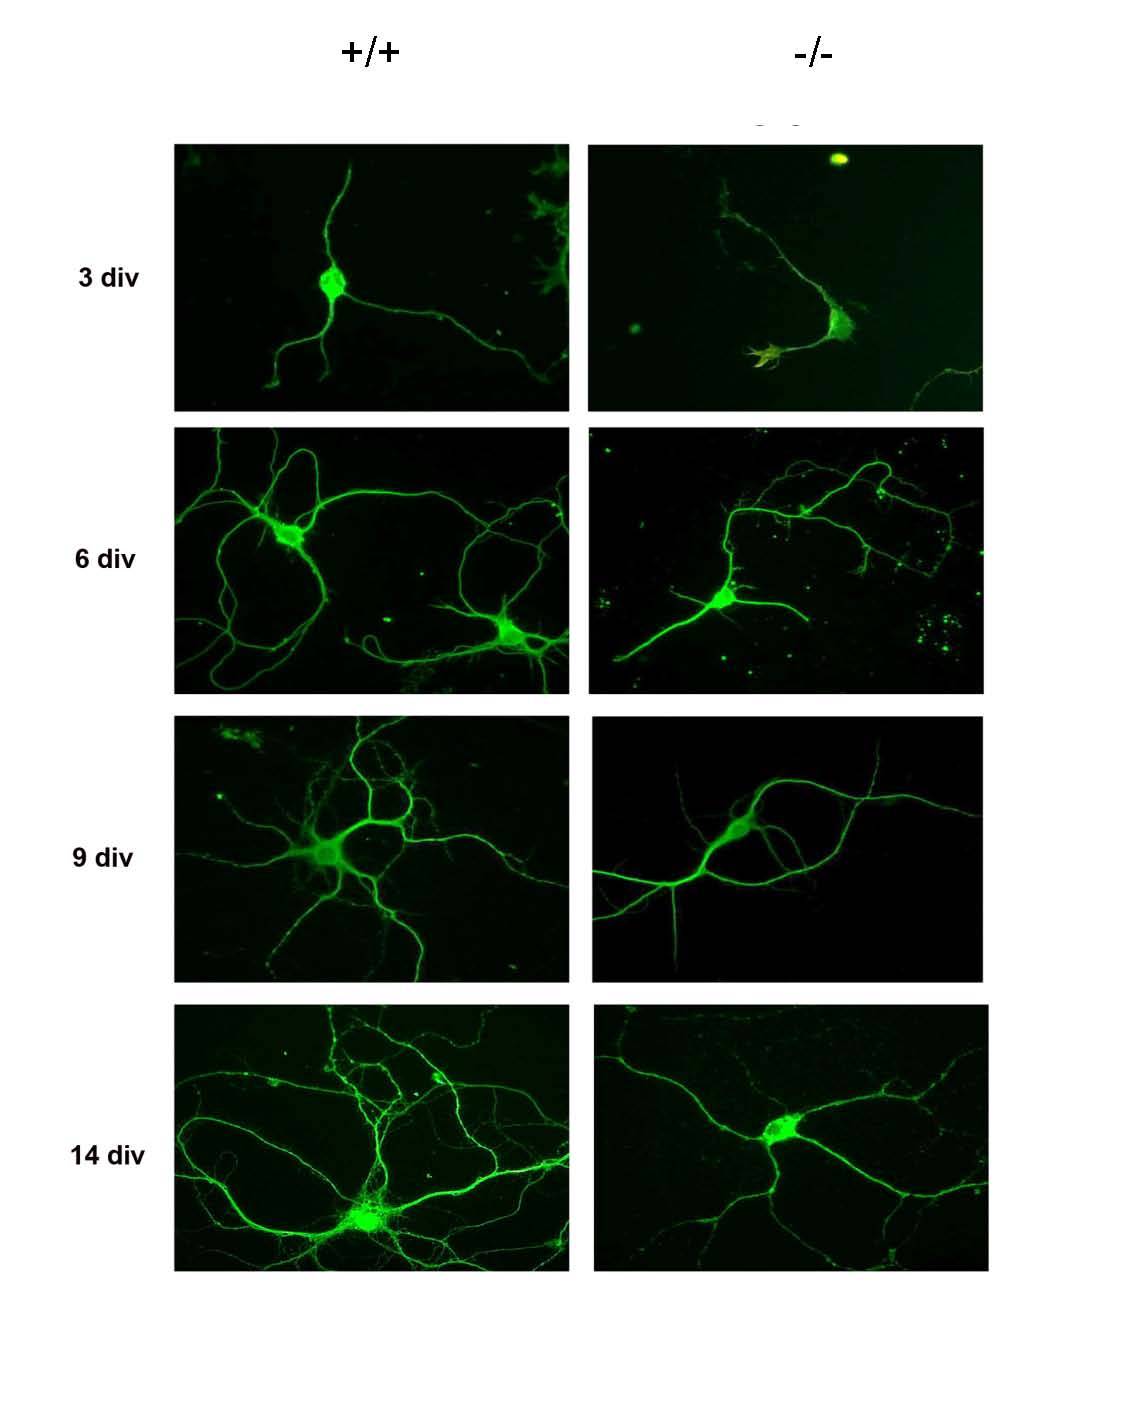 neuronas del hipocampo de un ratón que no expresa la proteína RhoE